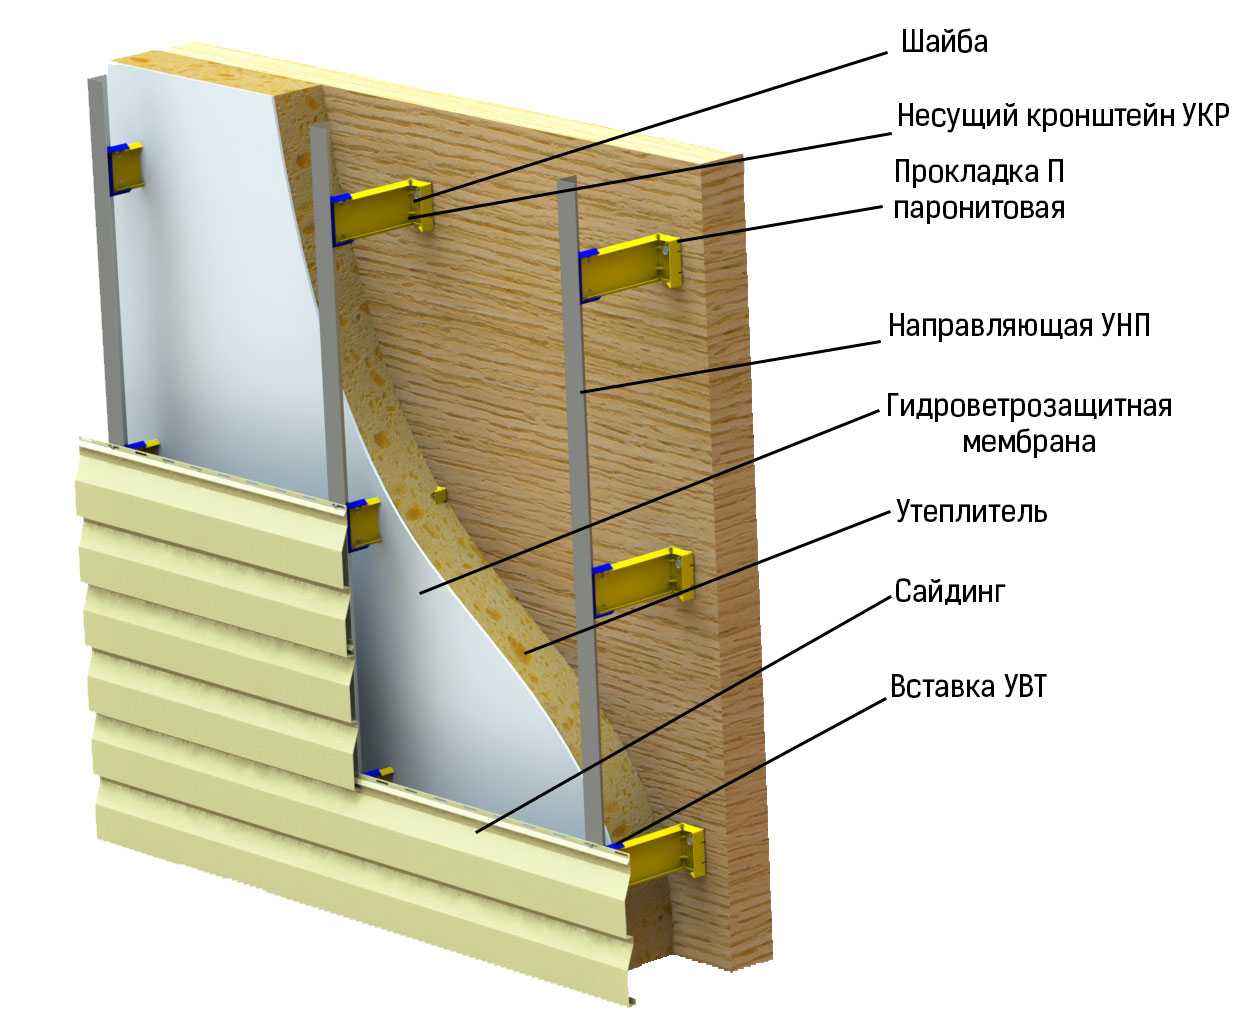 Блок-хаус для наружной отделки дома (54 фото): обшивка снаружи, как выбрать материал для внешних работ, примеры обшитых стороений